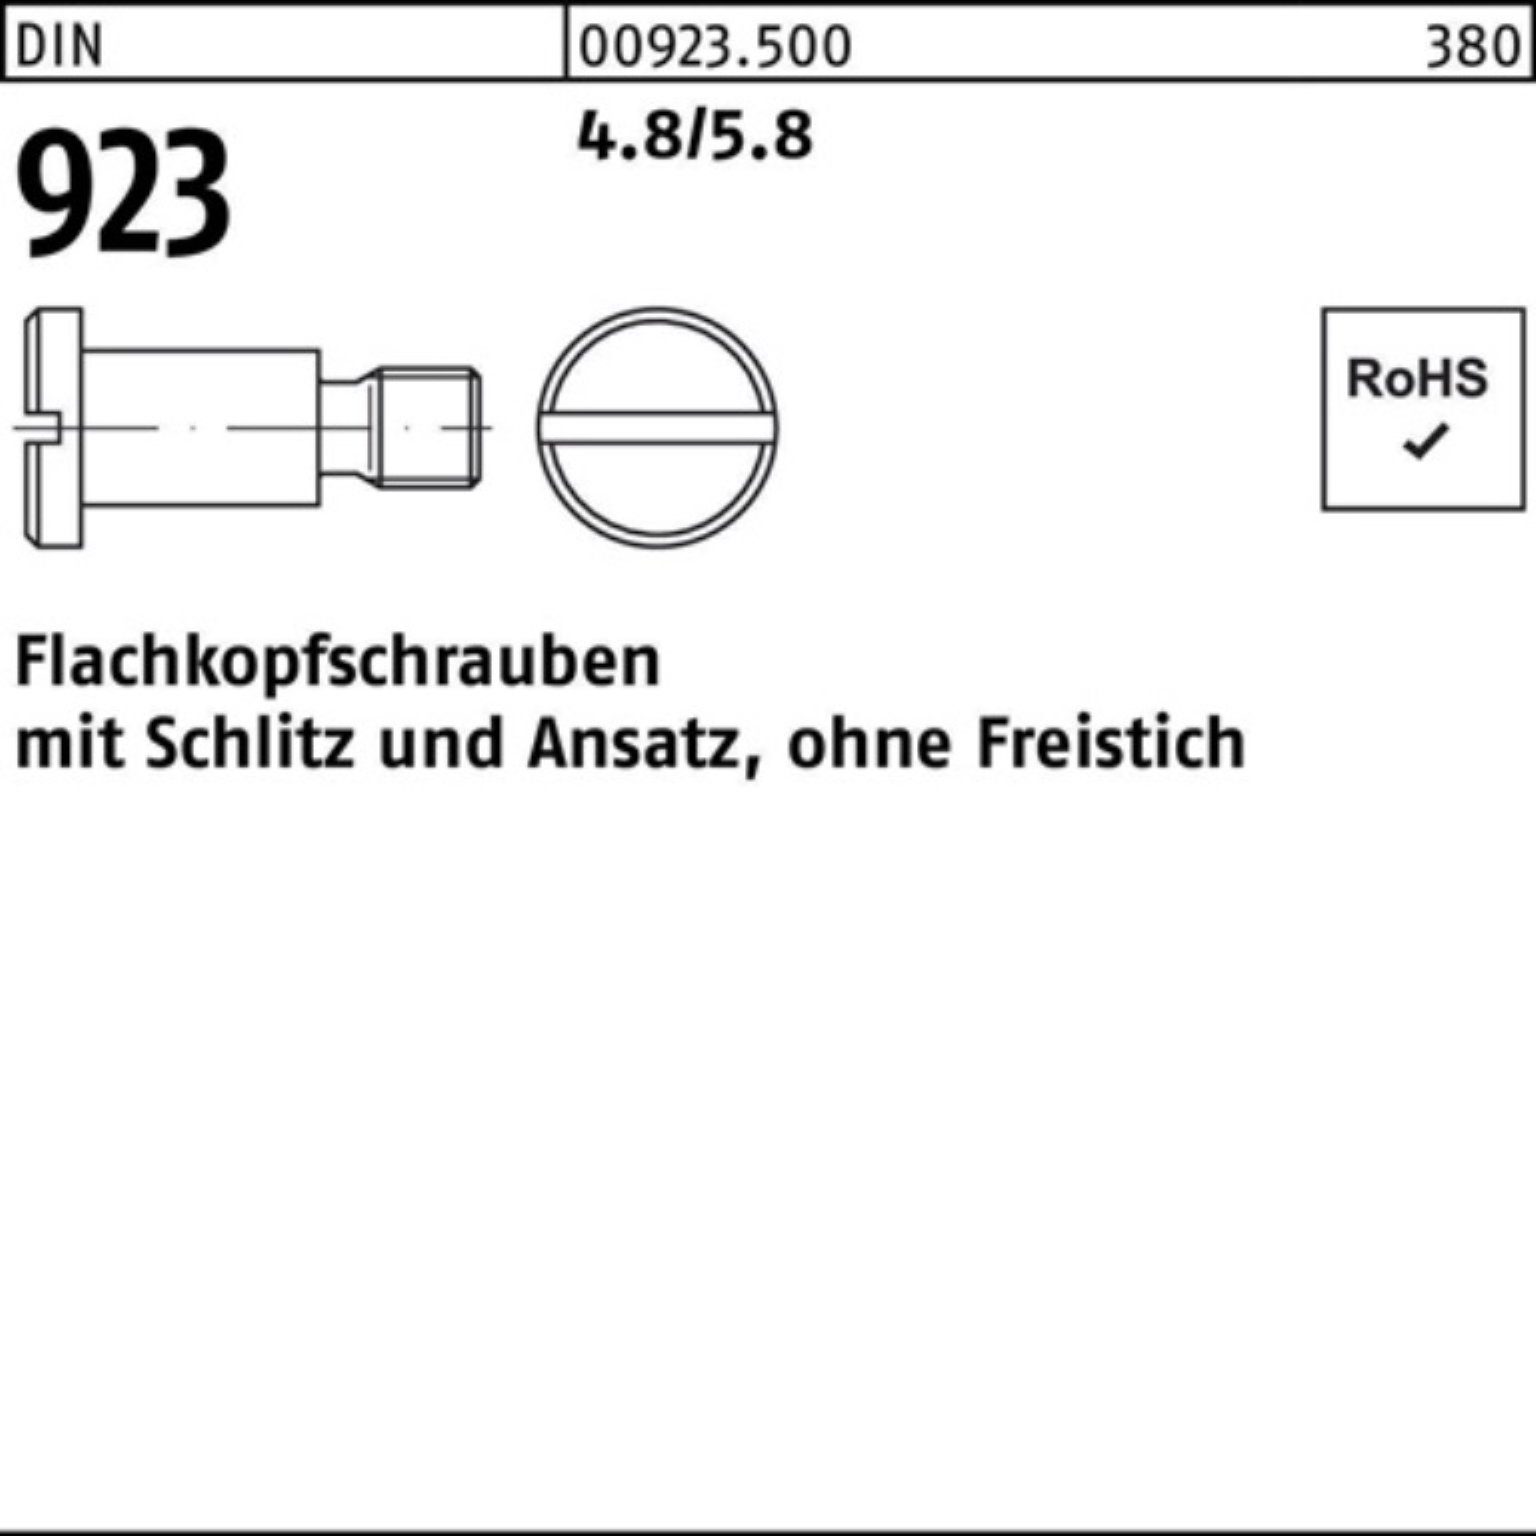 Reyher Schraube 100er DIN M4x Schlitz/Ansatz 923 4x 6,0 Flachkopfschraube 4.8/5.8 Pack